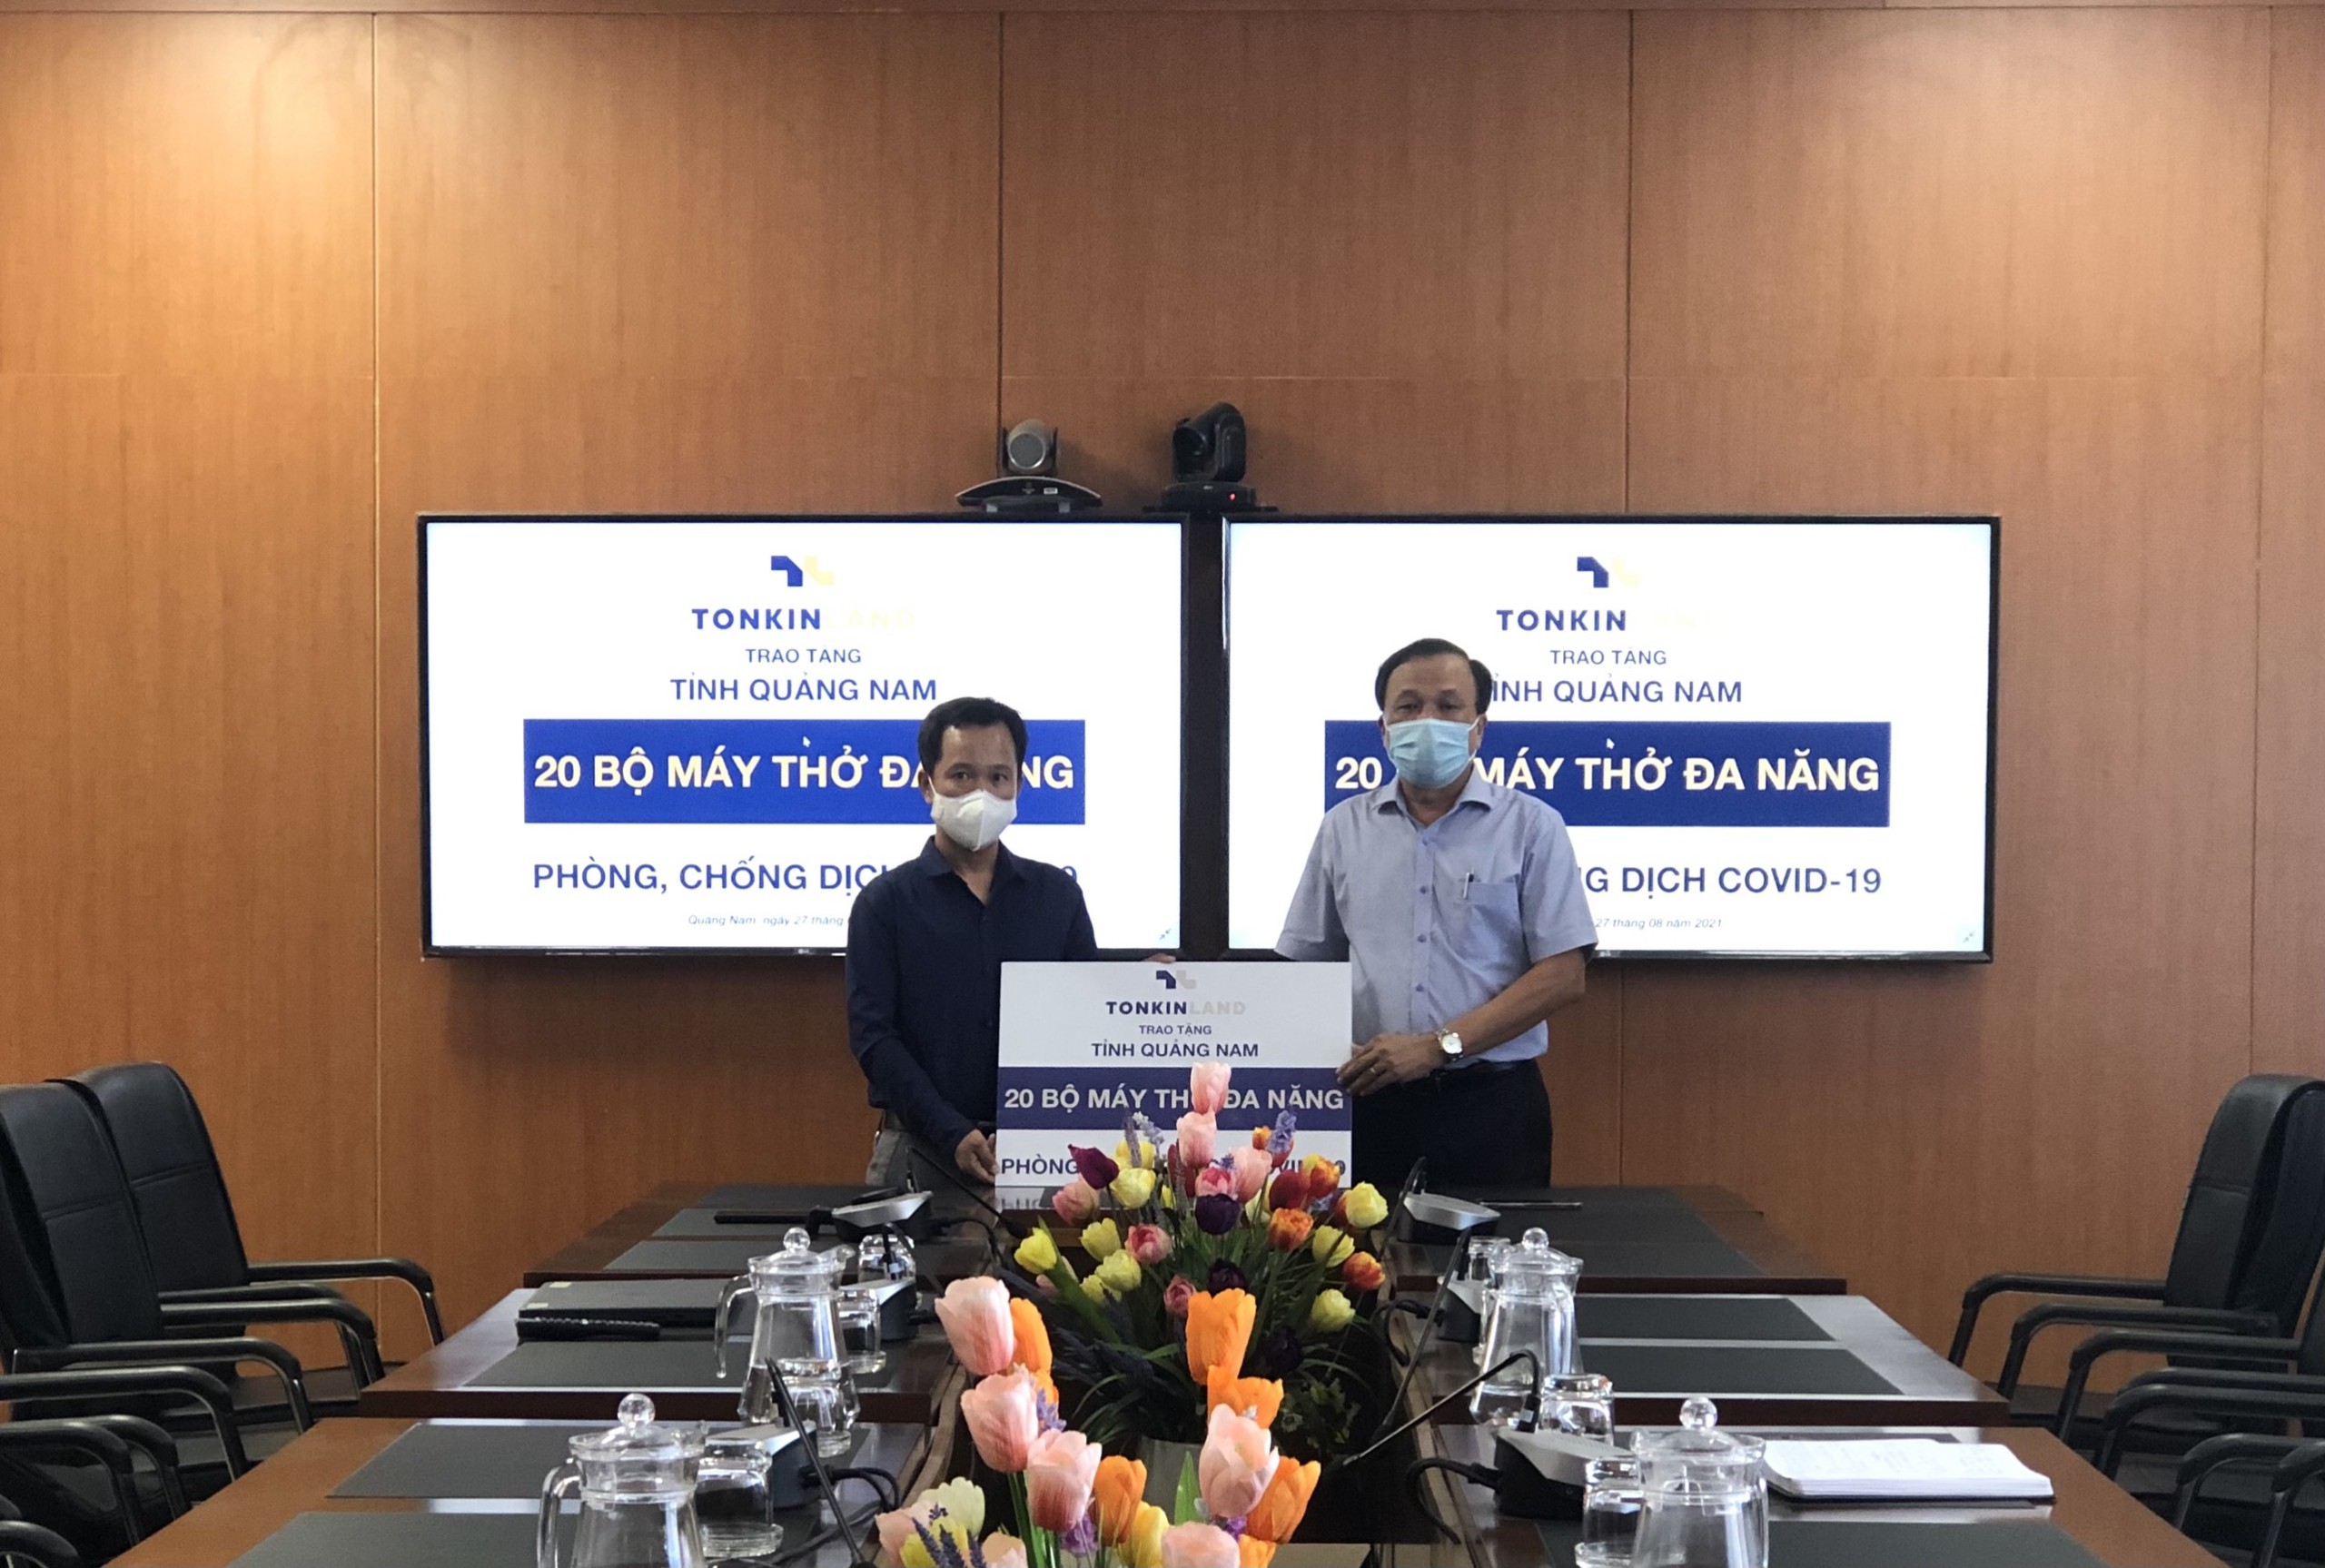 QuangNamCDC 27/08/2021 – Sở y tế Quảng Nam tiếp nhận 20 máy thở đa năng phòng chống dịch Covid-19